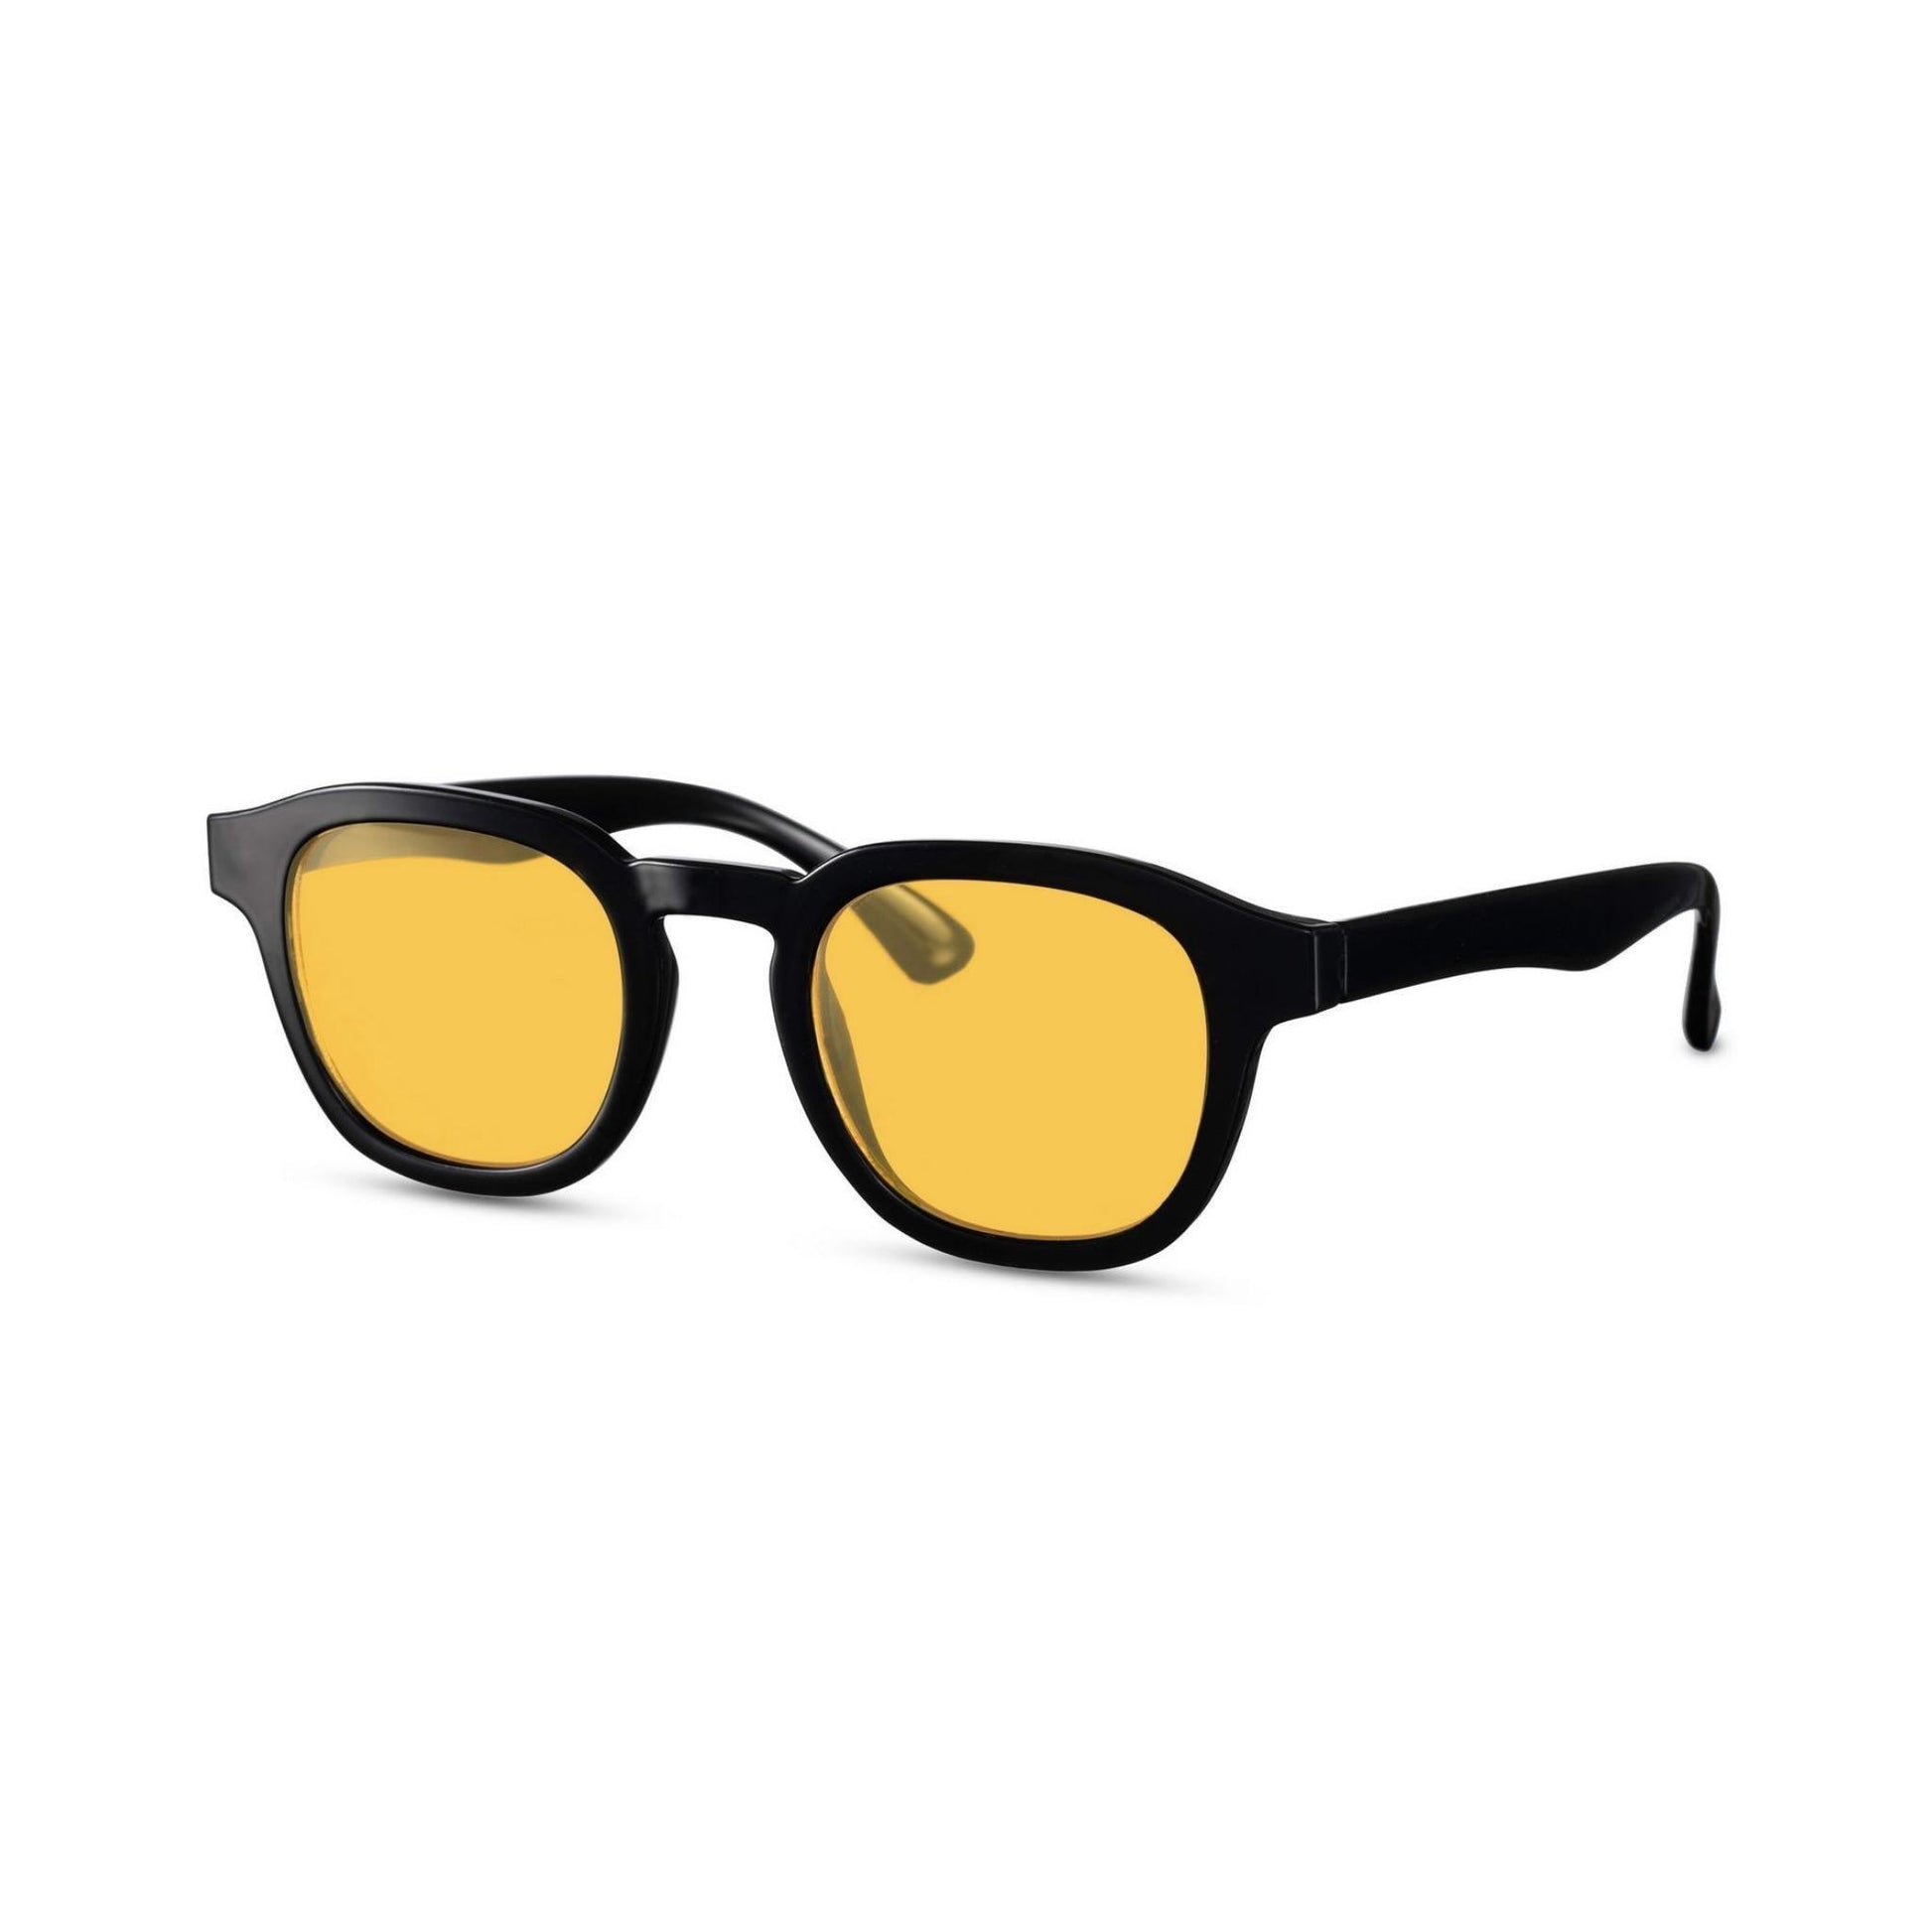 Γυαλιά ηλίου Montreal της Exposure Sunglasses με προστασία UV400 με μαύρο σκελετό και κίτρινο φακό.Πλάγια προβολή.